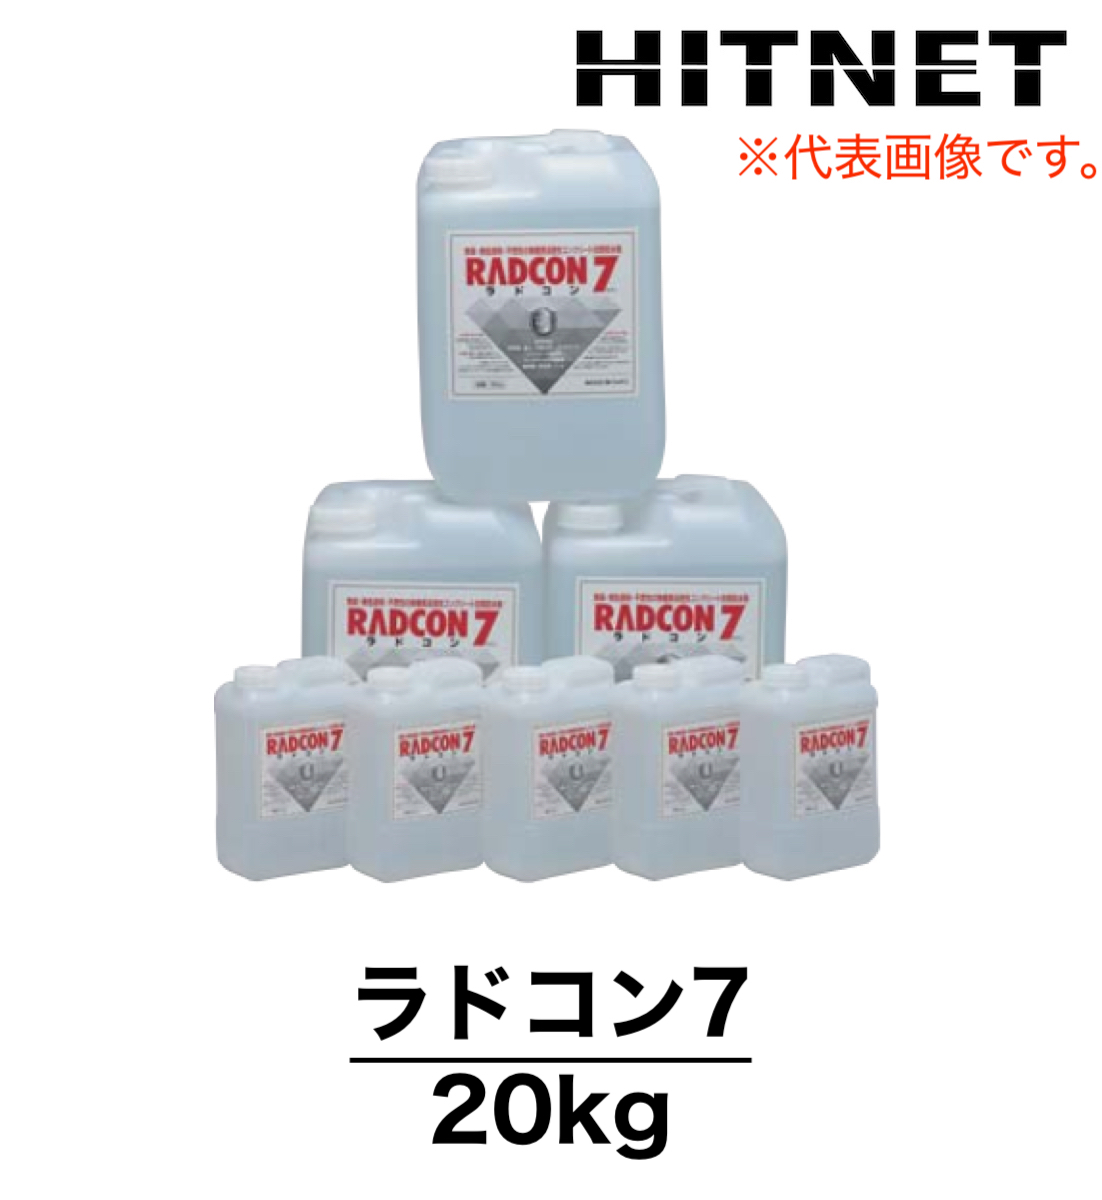 ラドコン7 20kg 無機質浸透性コンクリート改質防水剤 ラドジャパン